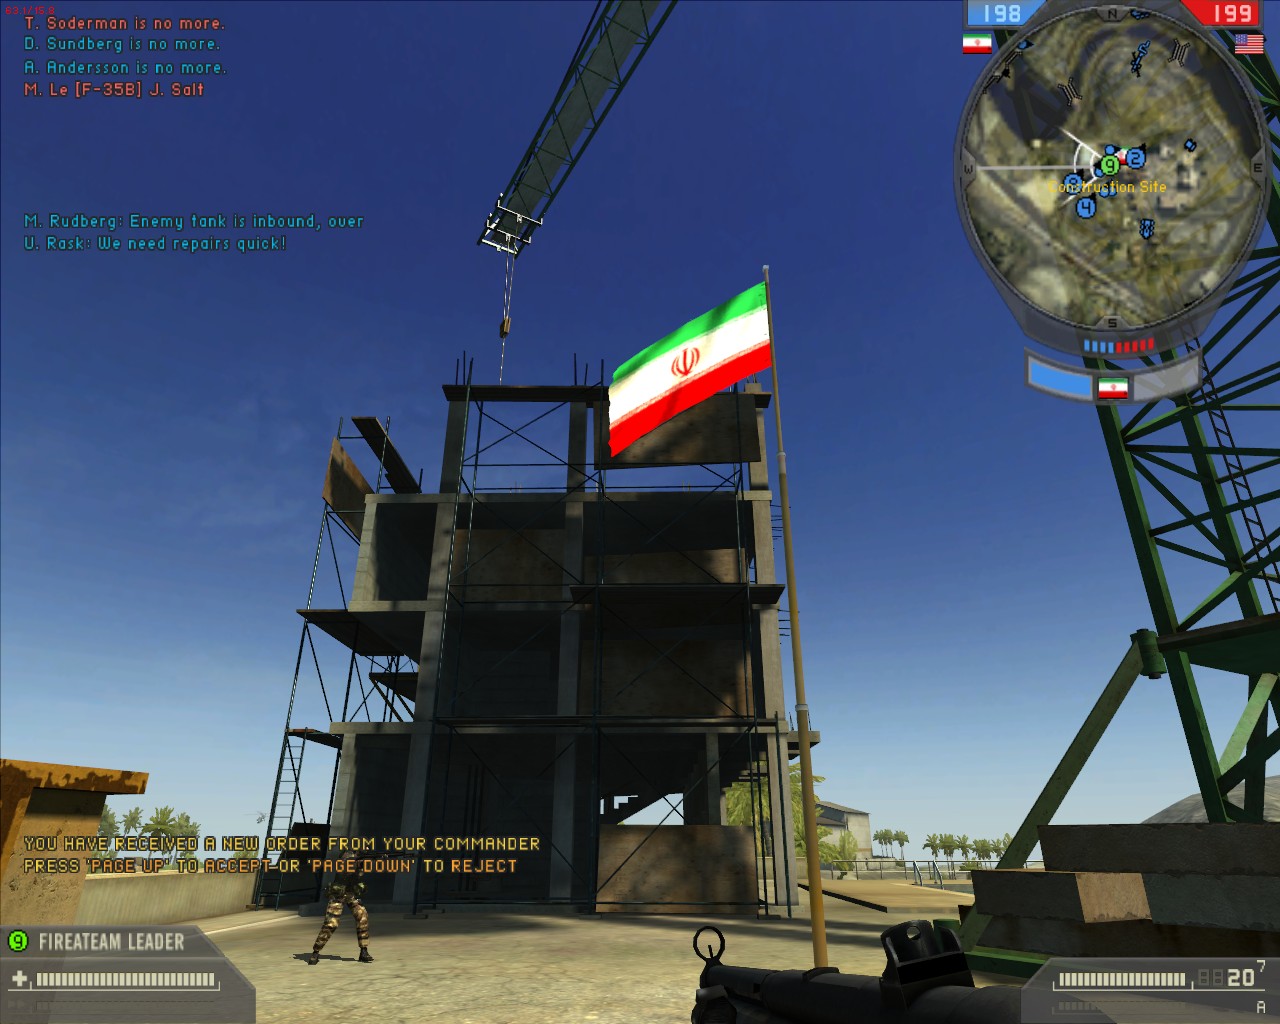 бателфилд 2 иран конфликт трейлер фото 9